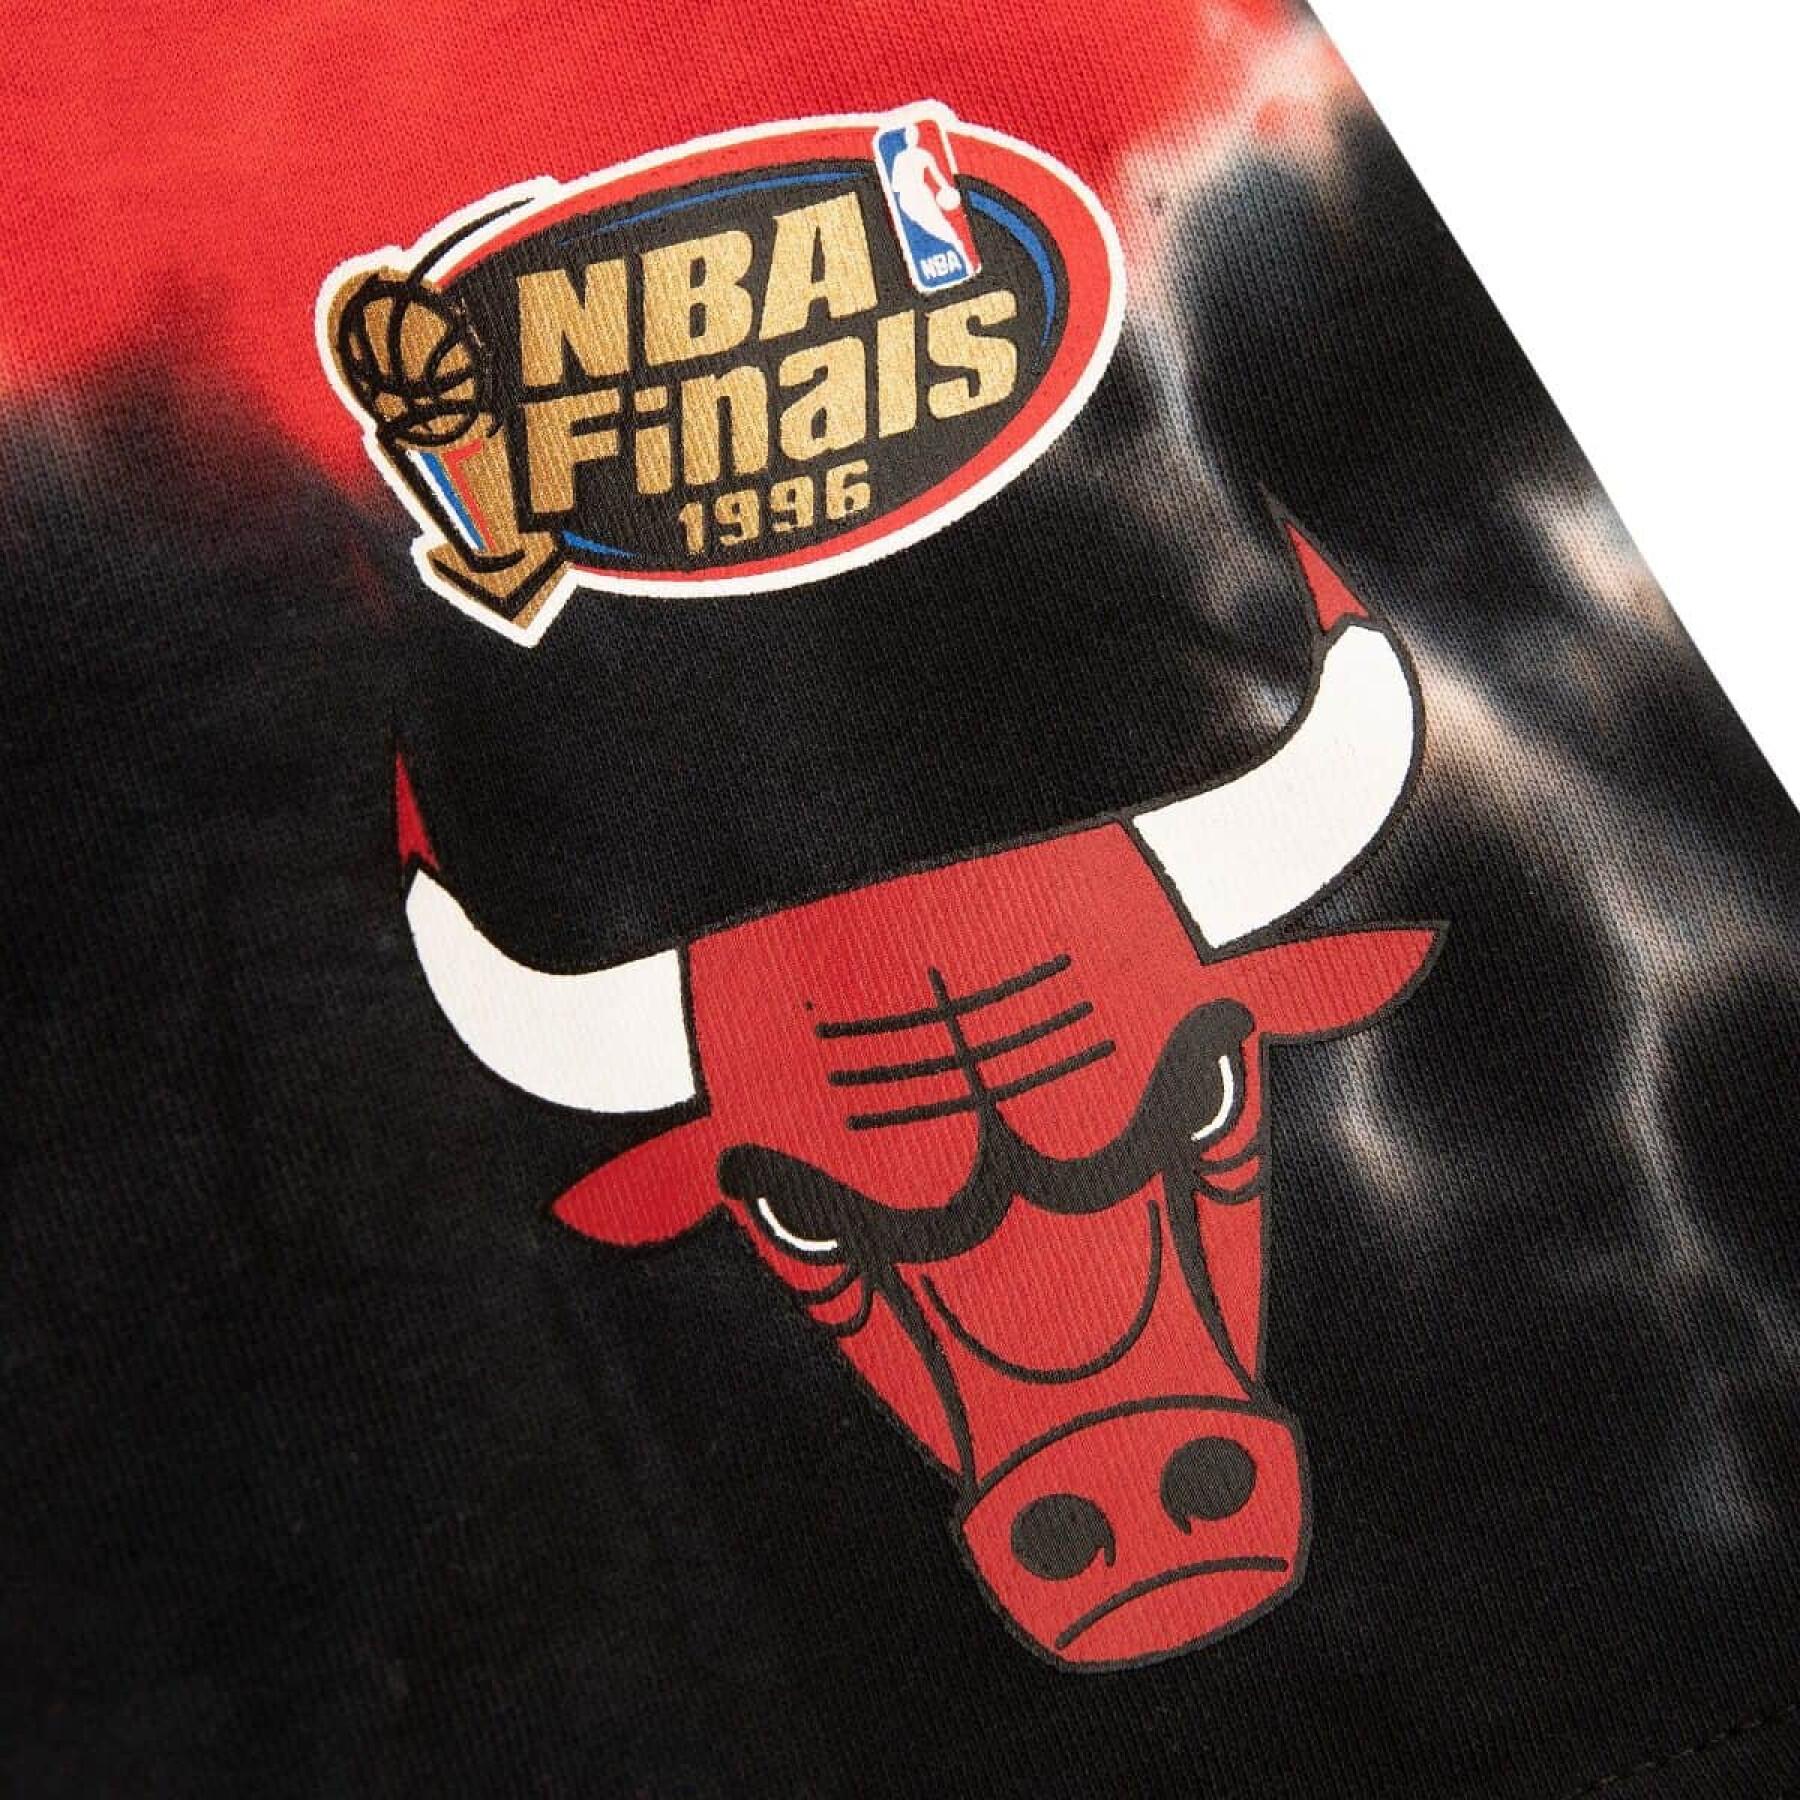 Calções Chicago Bulls NBA Finals 1996